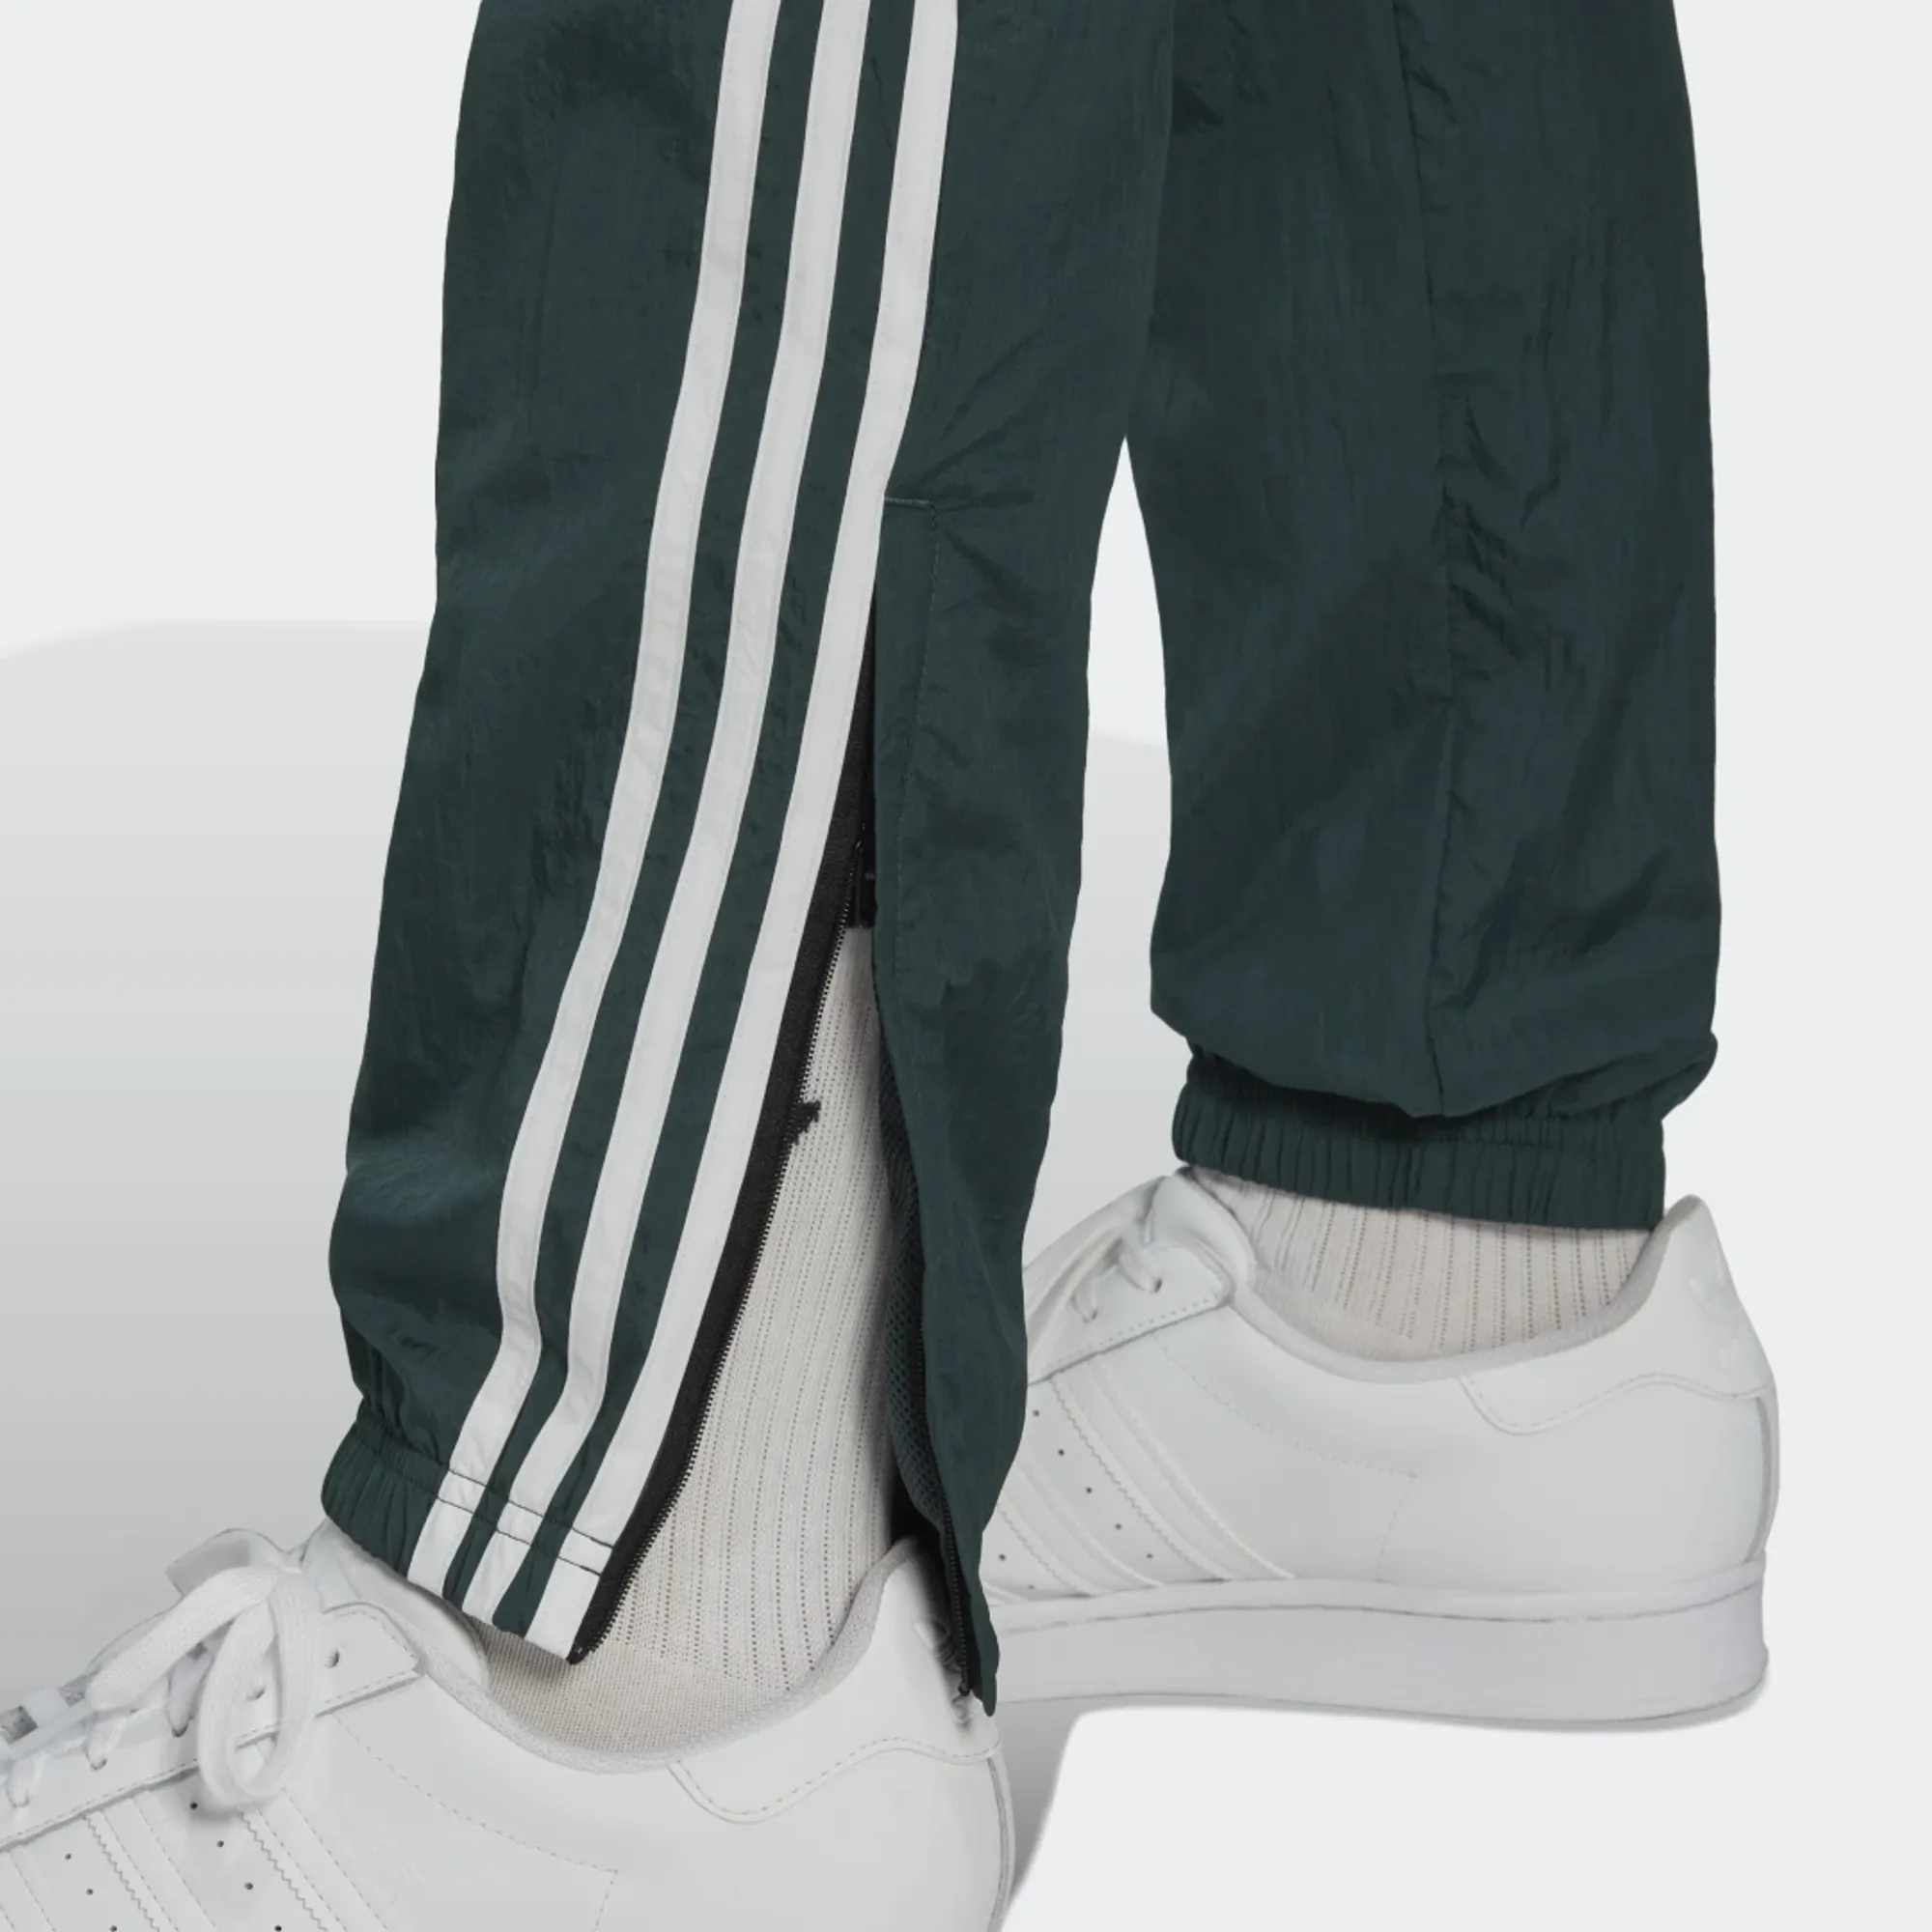 Adidas Originals Firebird Track Pants Green - 80s Casual Classics